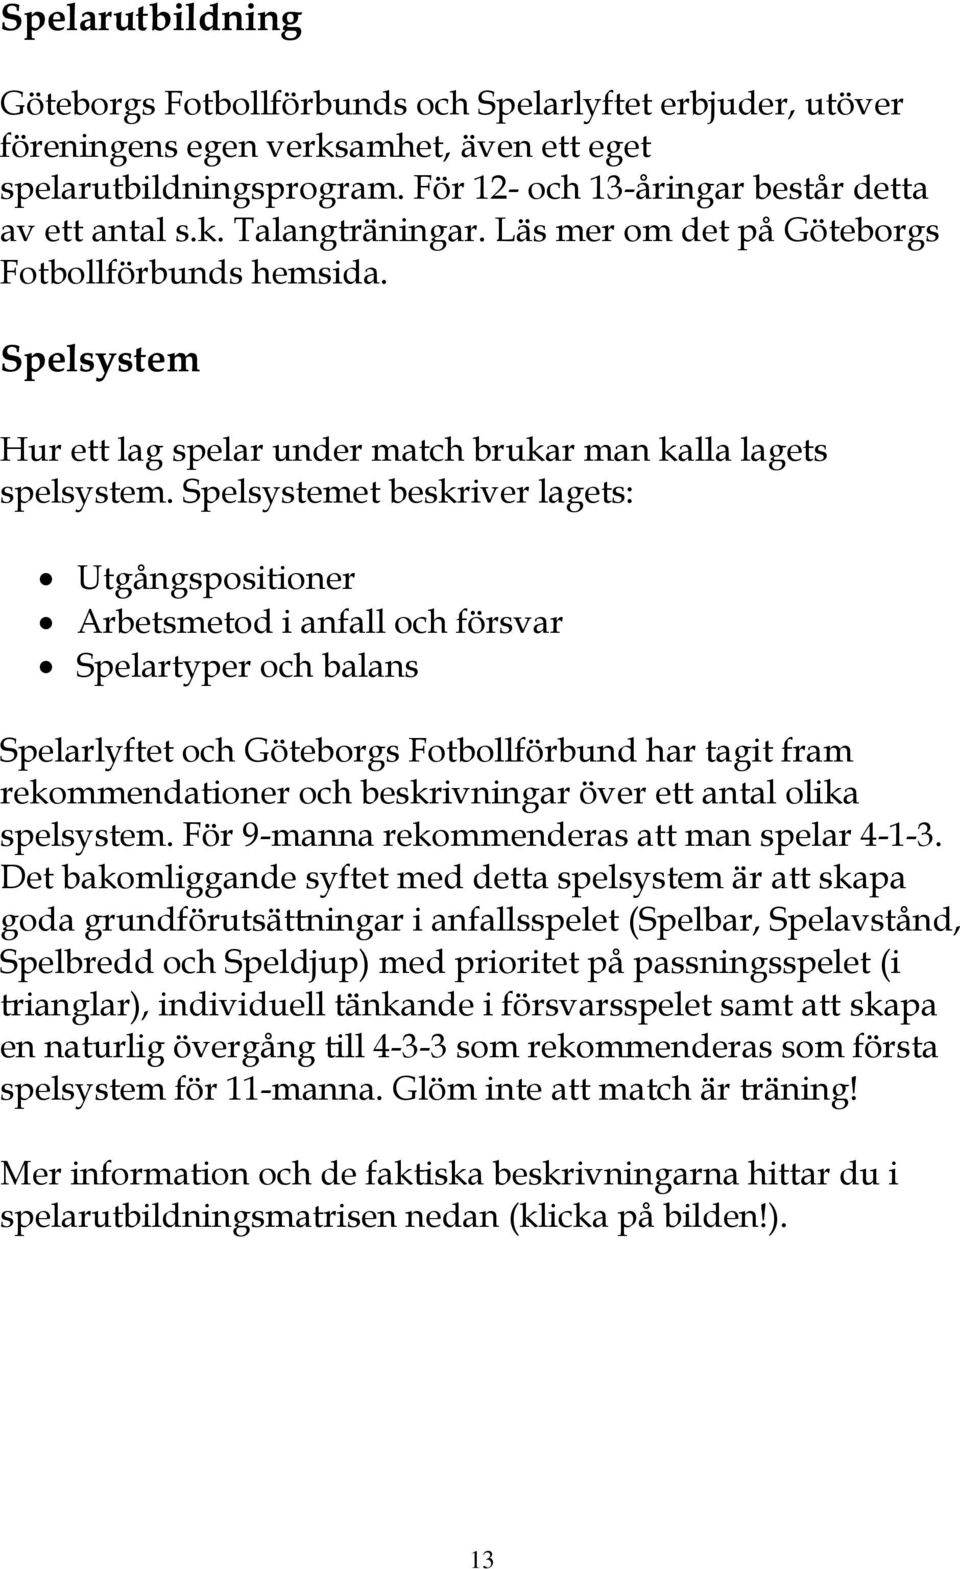 Spelsystemet beskriver lagets: Utgångspositioner Arbetsmetod i anfall och försvar Spelartyper och balans Spelarlyftet och Göteborgs Fotbollförbund har tagit fram rekommendationer och beskrivningar